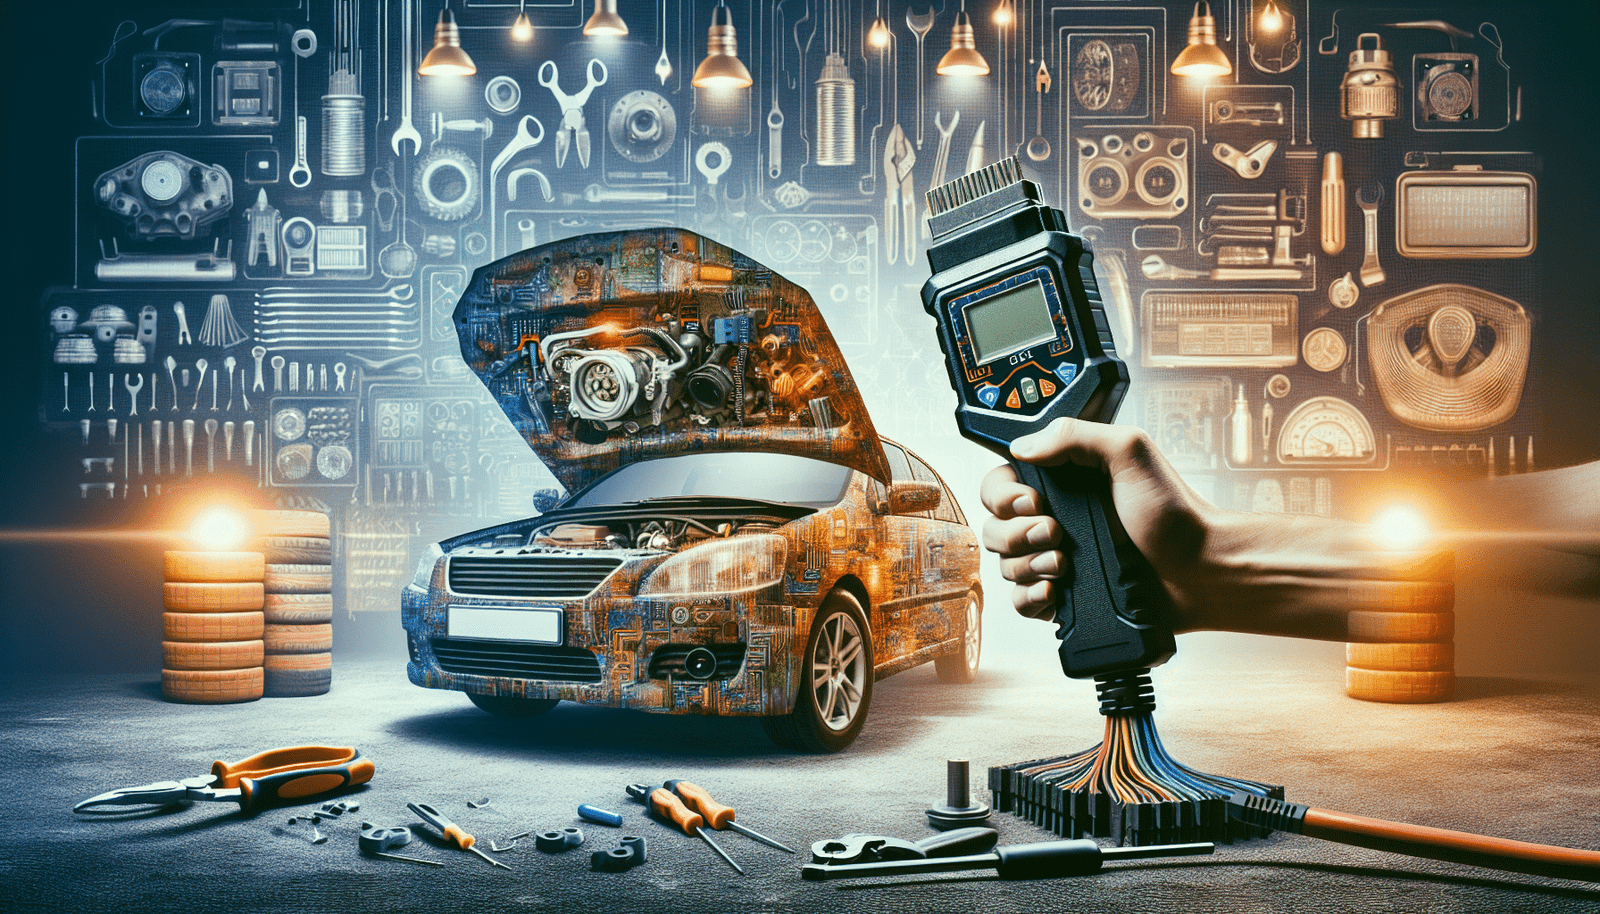 découvrez quelle application utiliser avec elm 327 pour diagnostiquer votre voiture et résoudre les problèmes mécaniques grâce à cet outil de diagnostic automobile.